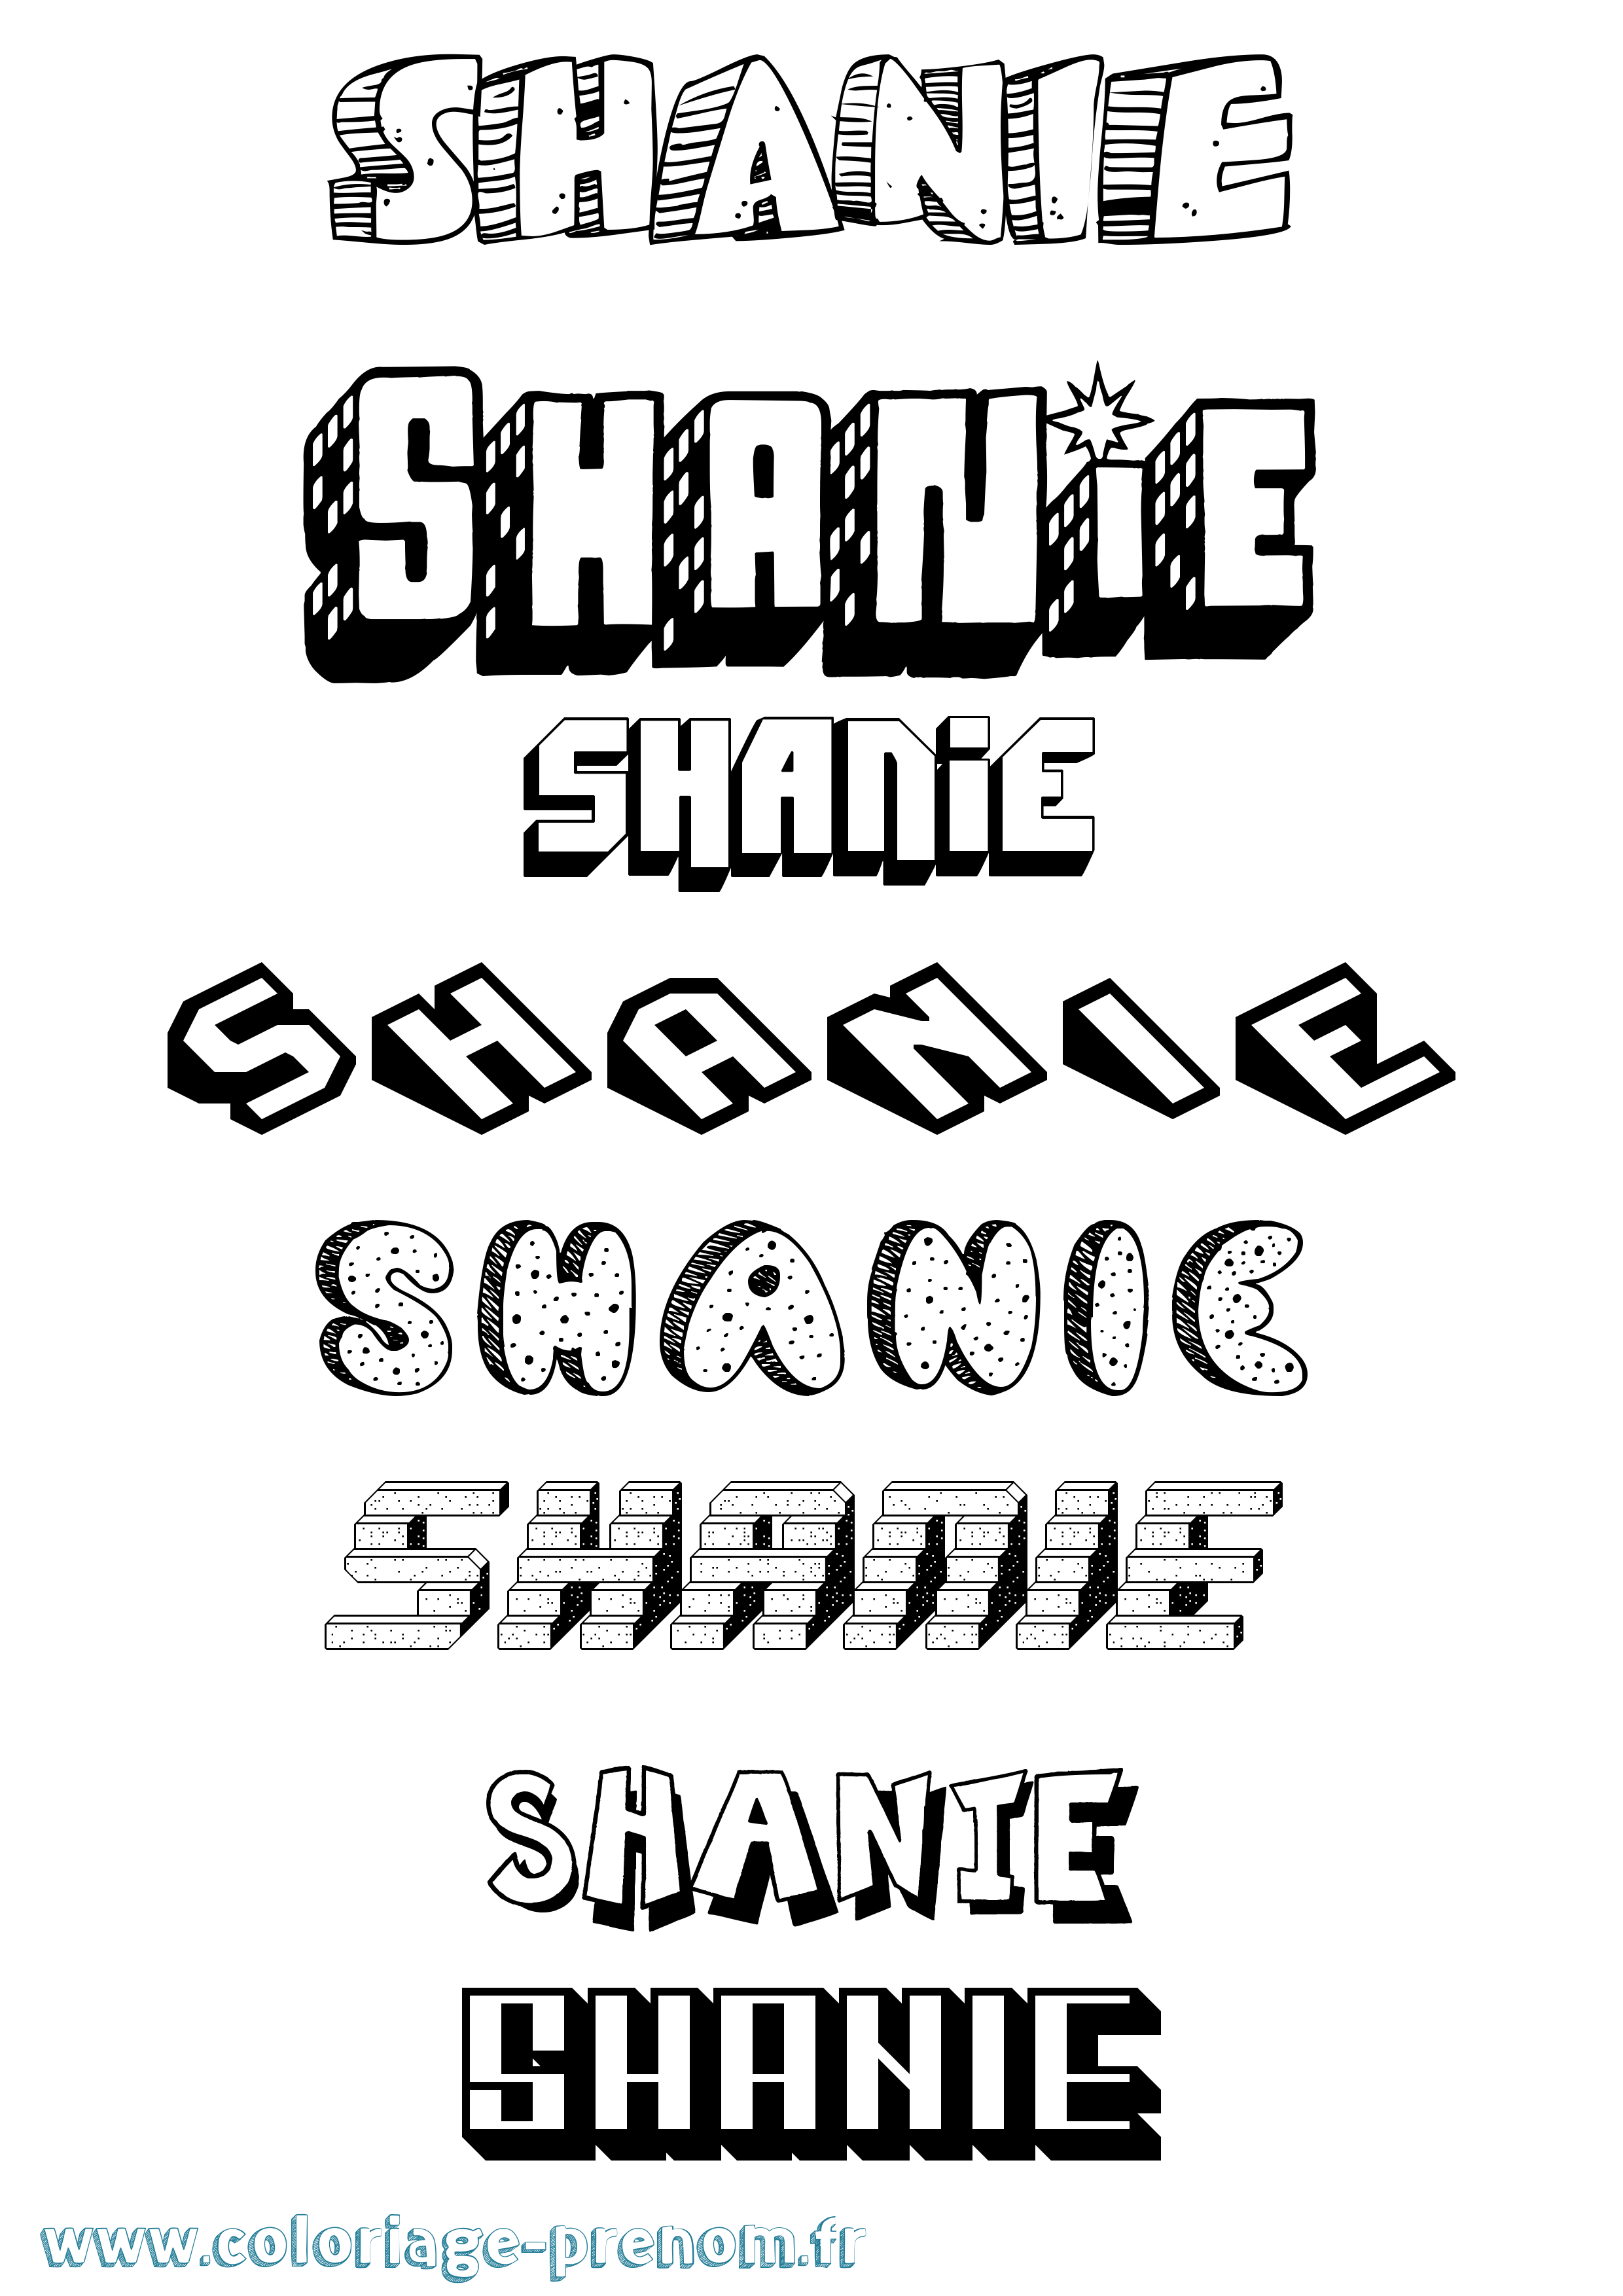 Coloriage prénom Shanie Effet 3D